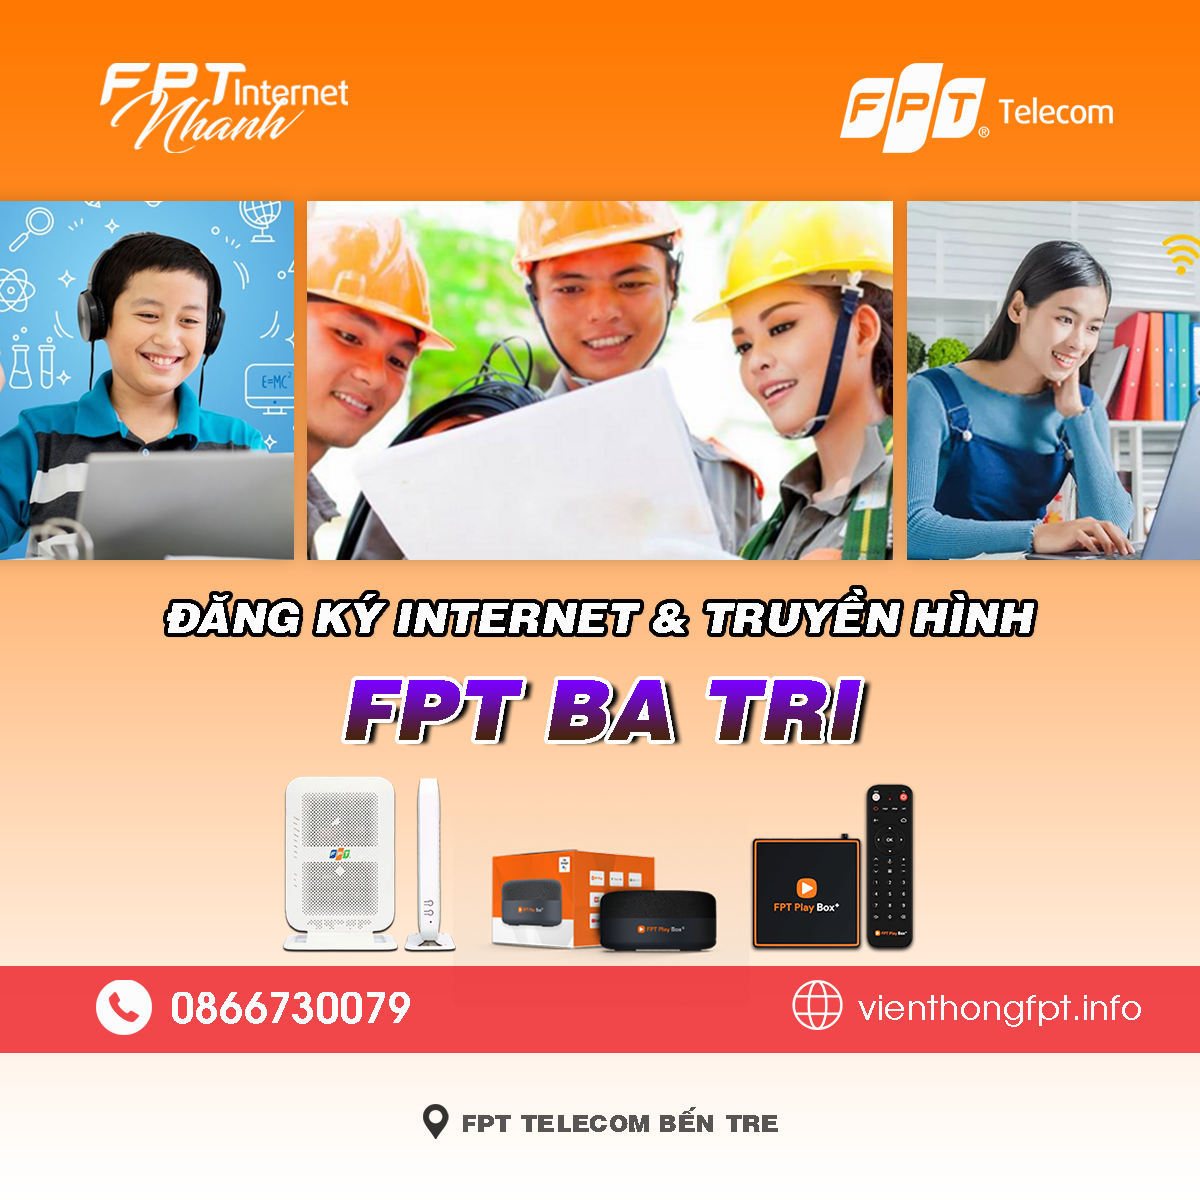 Bảng giá lắp mạng Internet + Truyền hình FPT tại Ba Tri